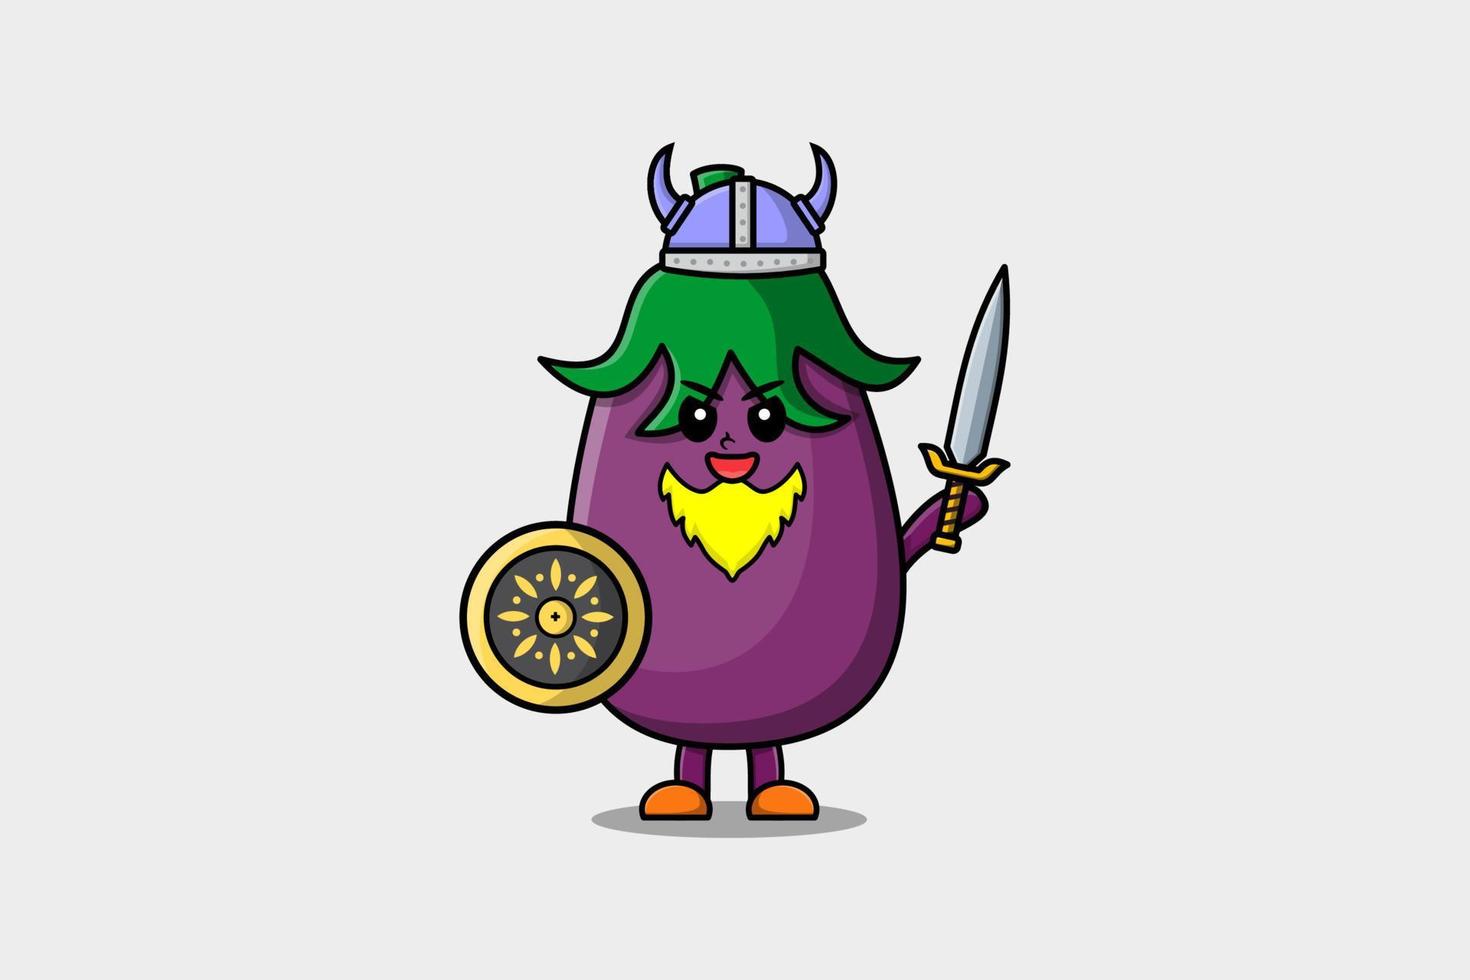 personnage de dessin animé mignon pirate viking aubergine vecteur